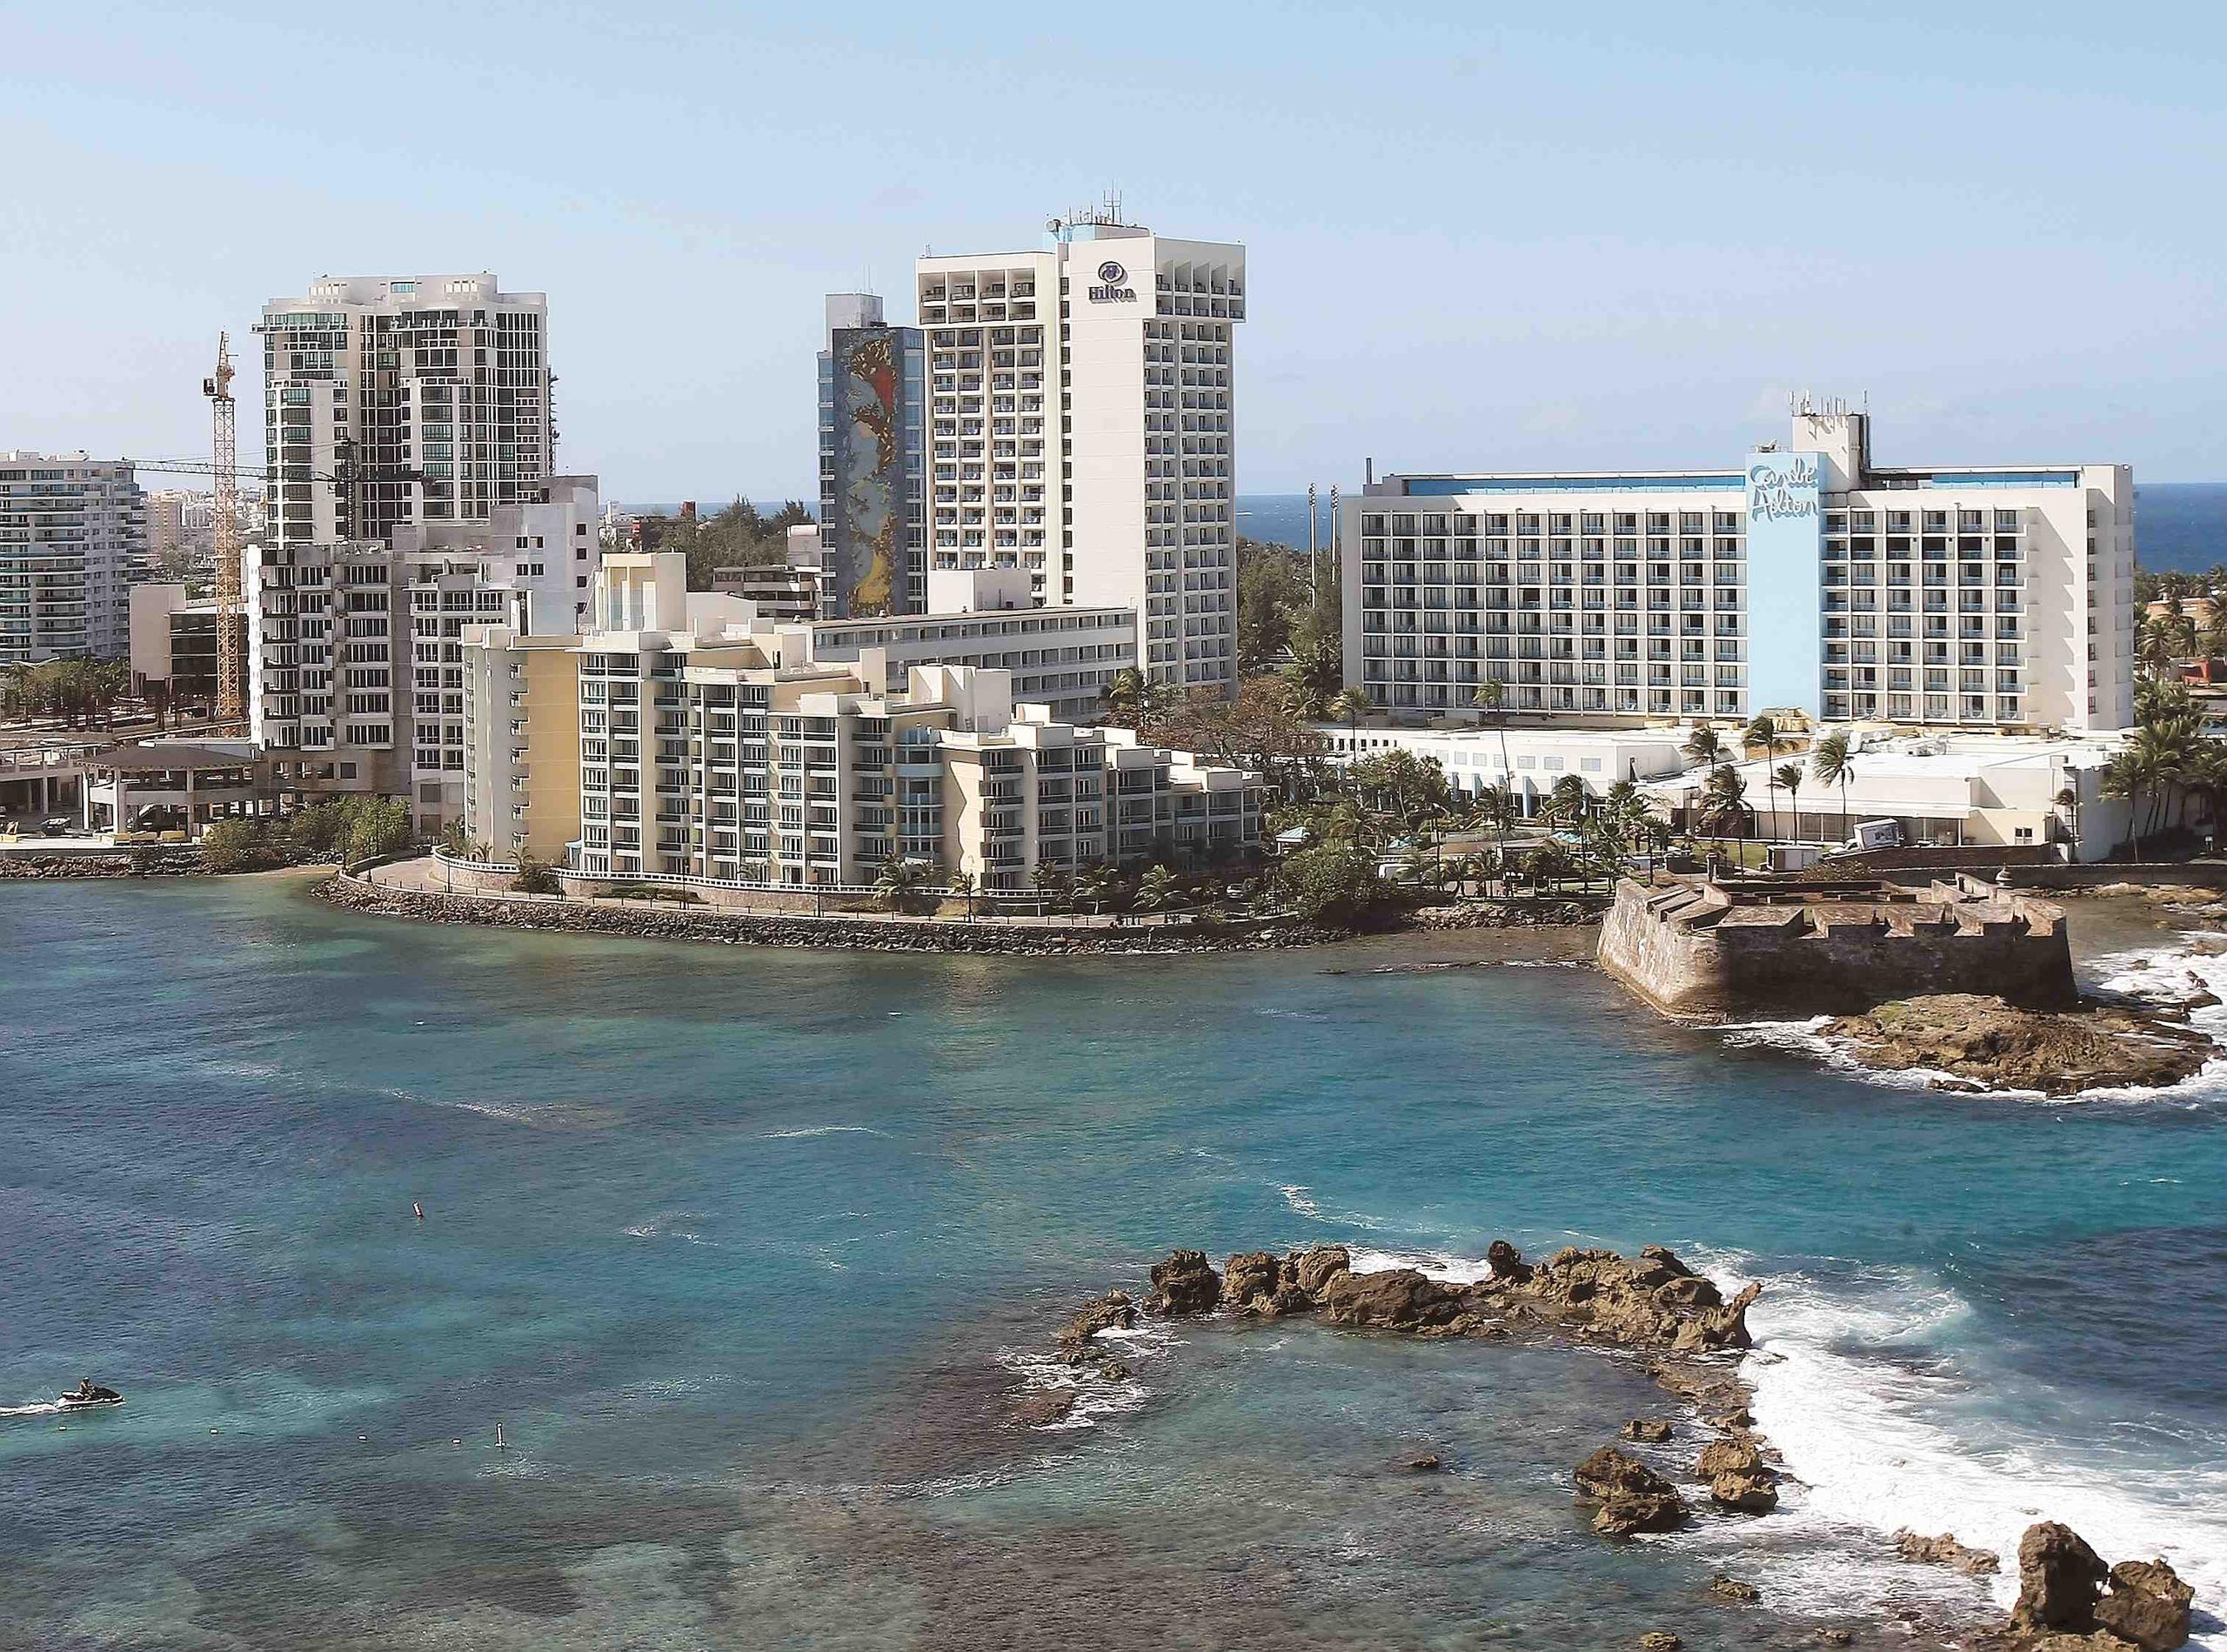 La convención será en el Hotel Caribe Hilton y contará con la presencia y participación de actuales campeones y excampeones mundiales de la OMB, promesas y promotores, entre otros. (Archivo / GFR Media)